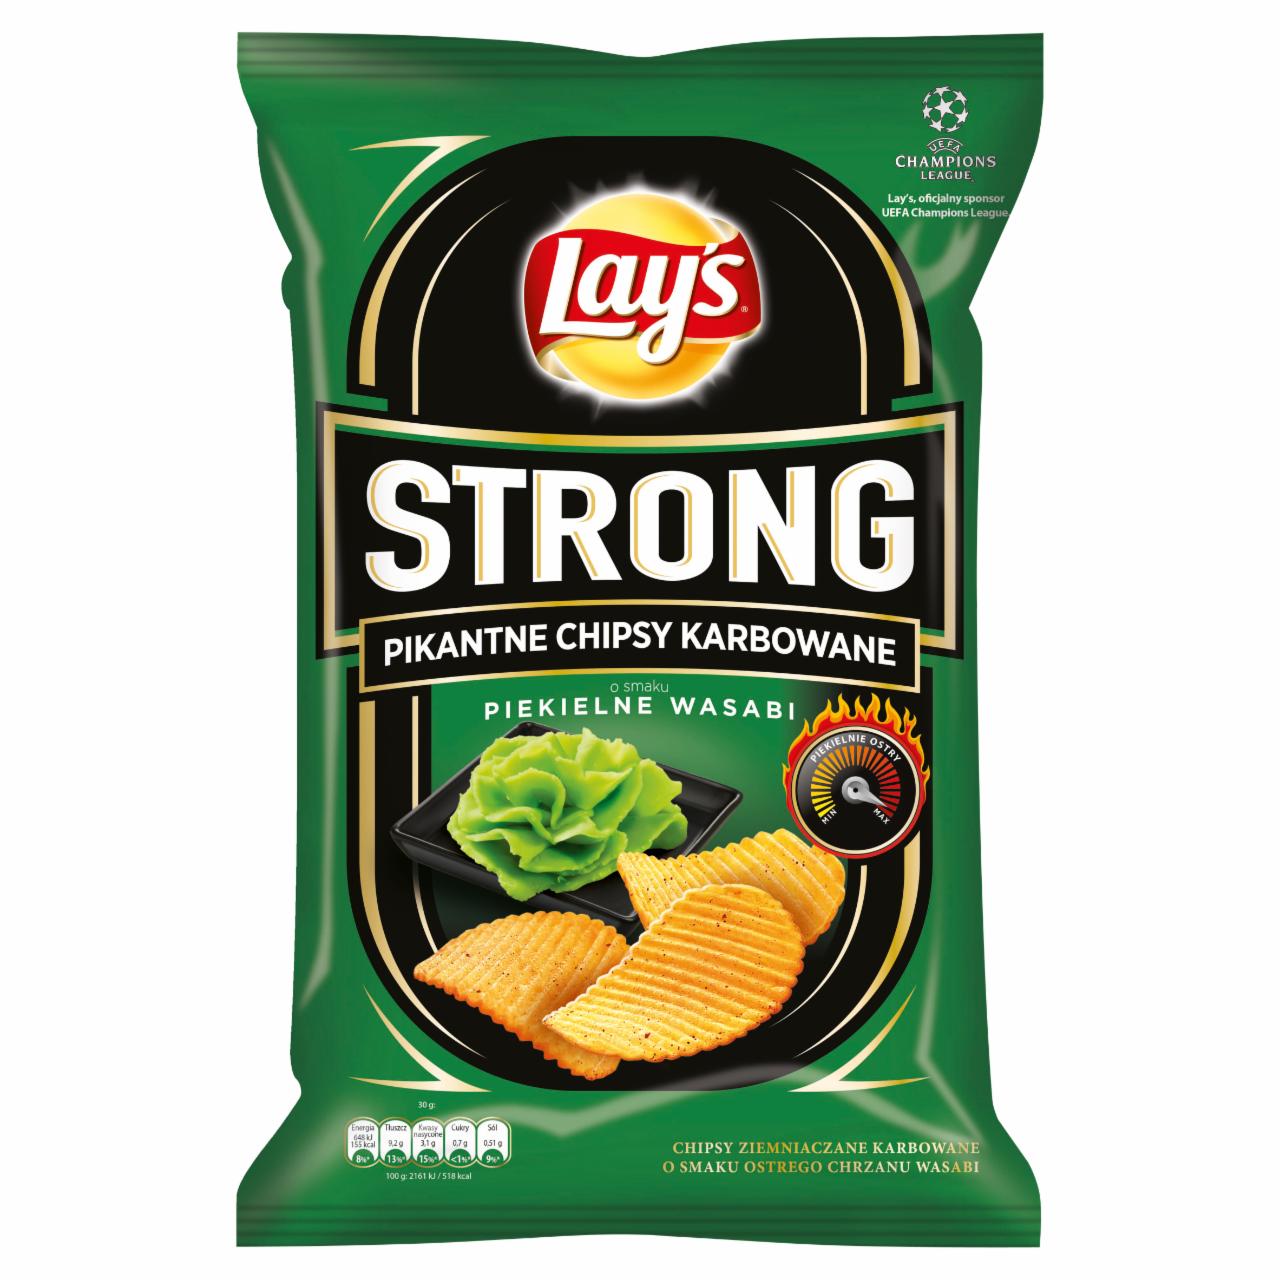 Zdjęcia - Lay's Strong Pikantne chipsy karbowane o smaku piekielne wasabi 150 g